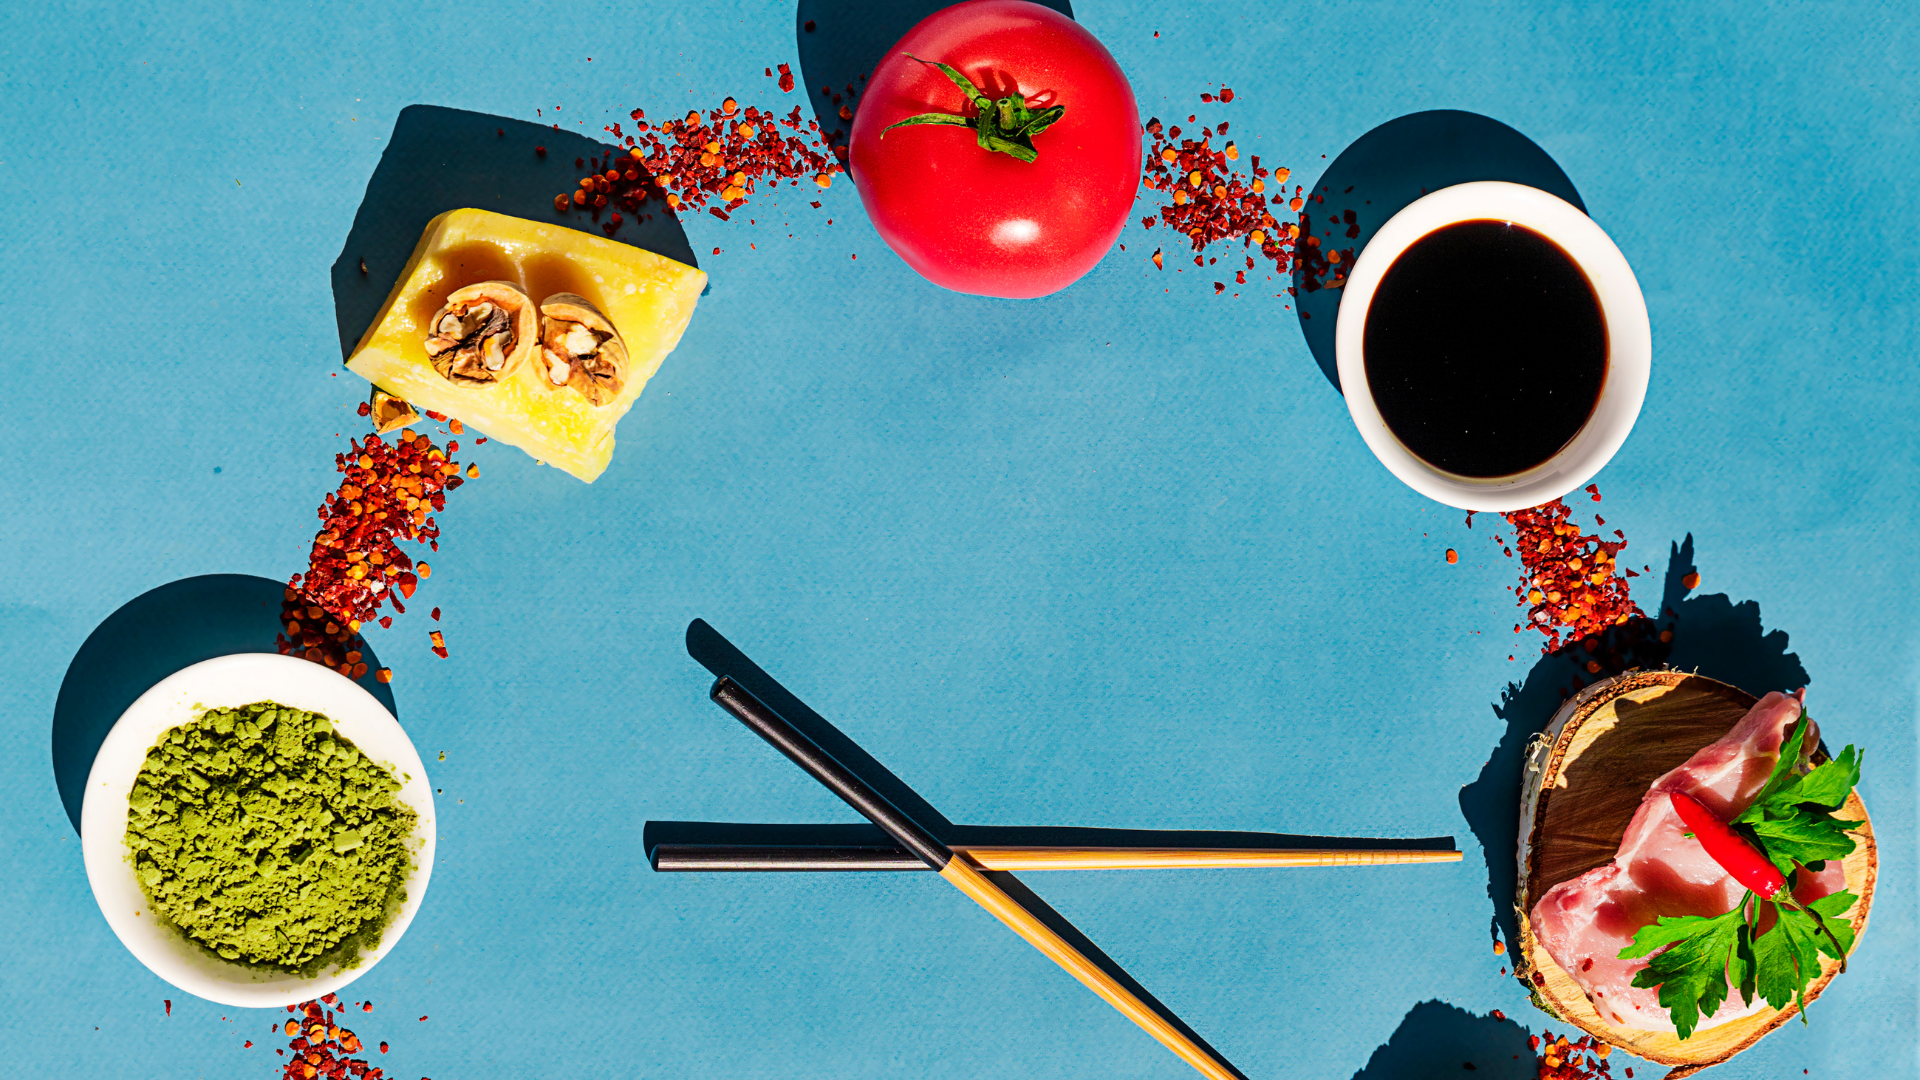 Foto de capa do artigo "Umami: o que é o sabor além do doce, amargo, salgado e azedo?"